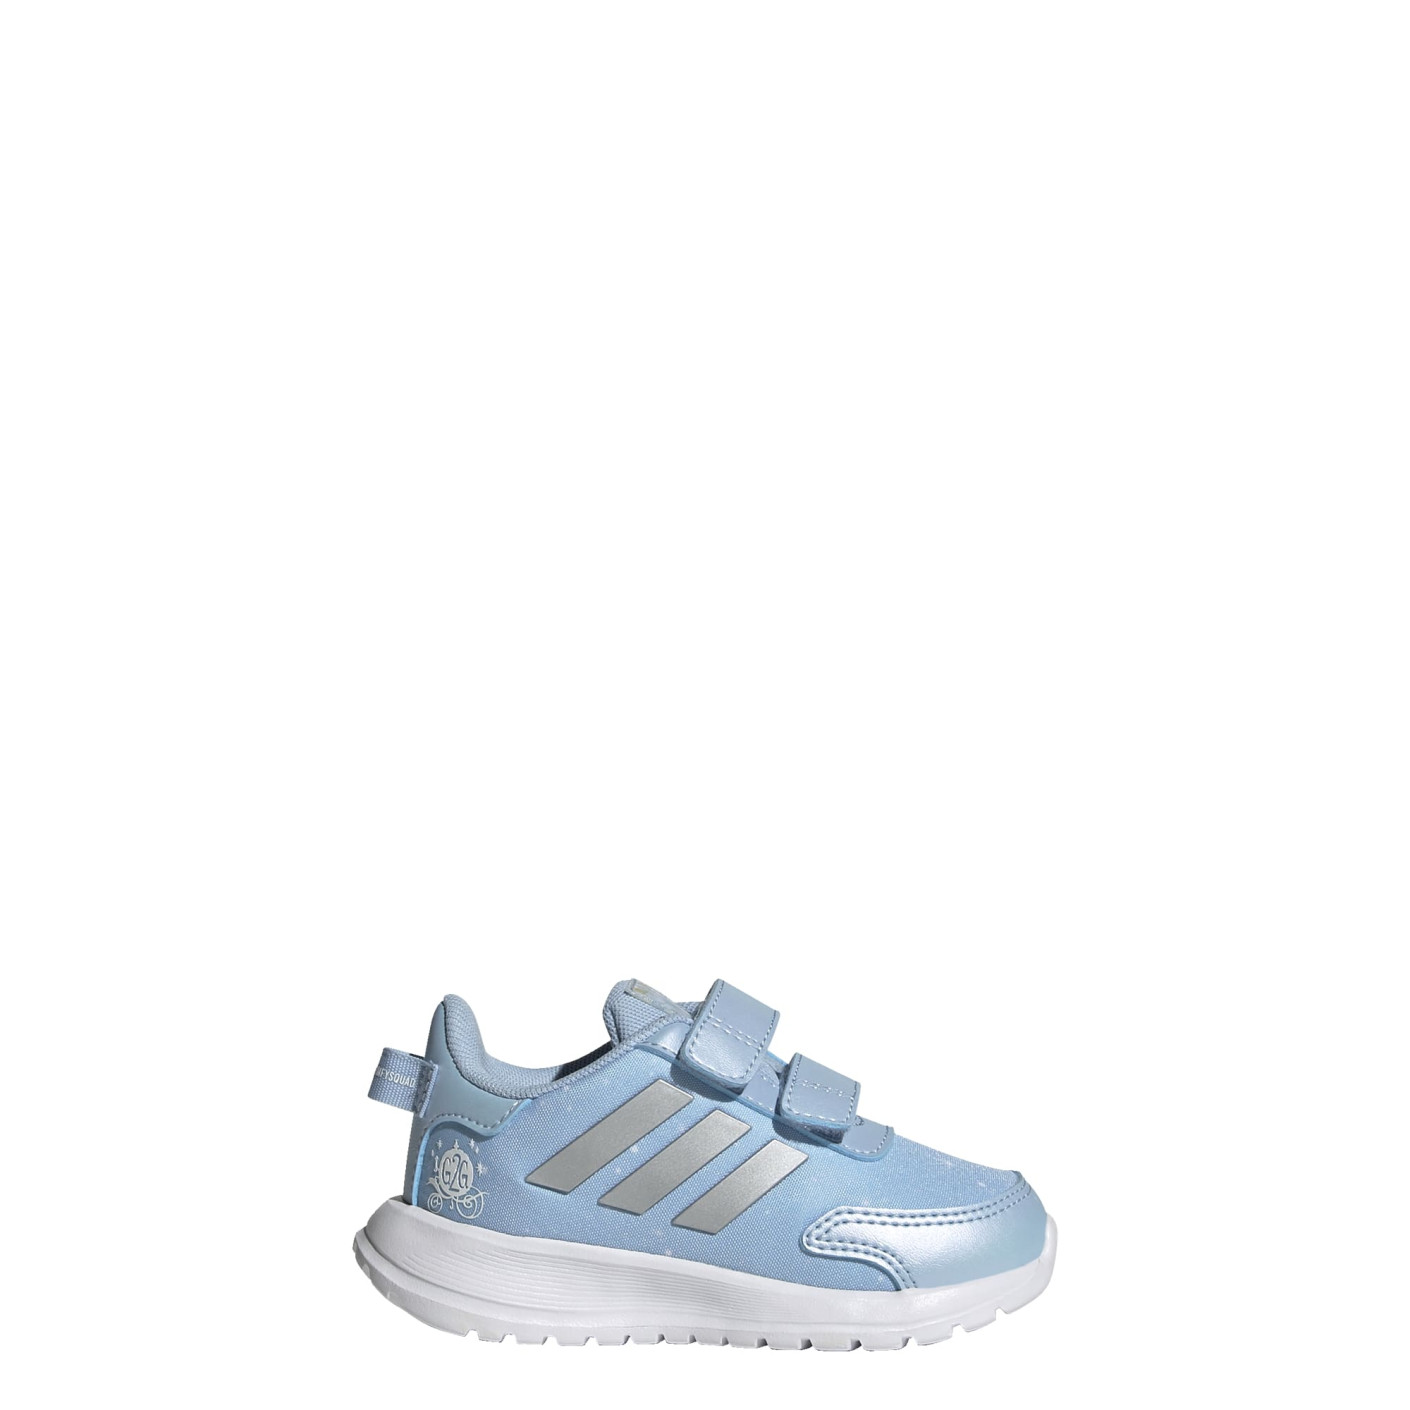 Onderdompeling melk wit grootmoeder adidas Tensaur Run Schoenen Baby / Peuters Blauw Zilver Wit